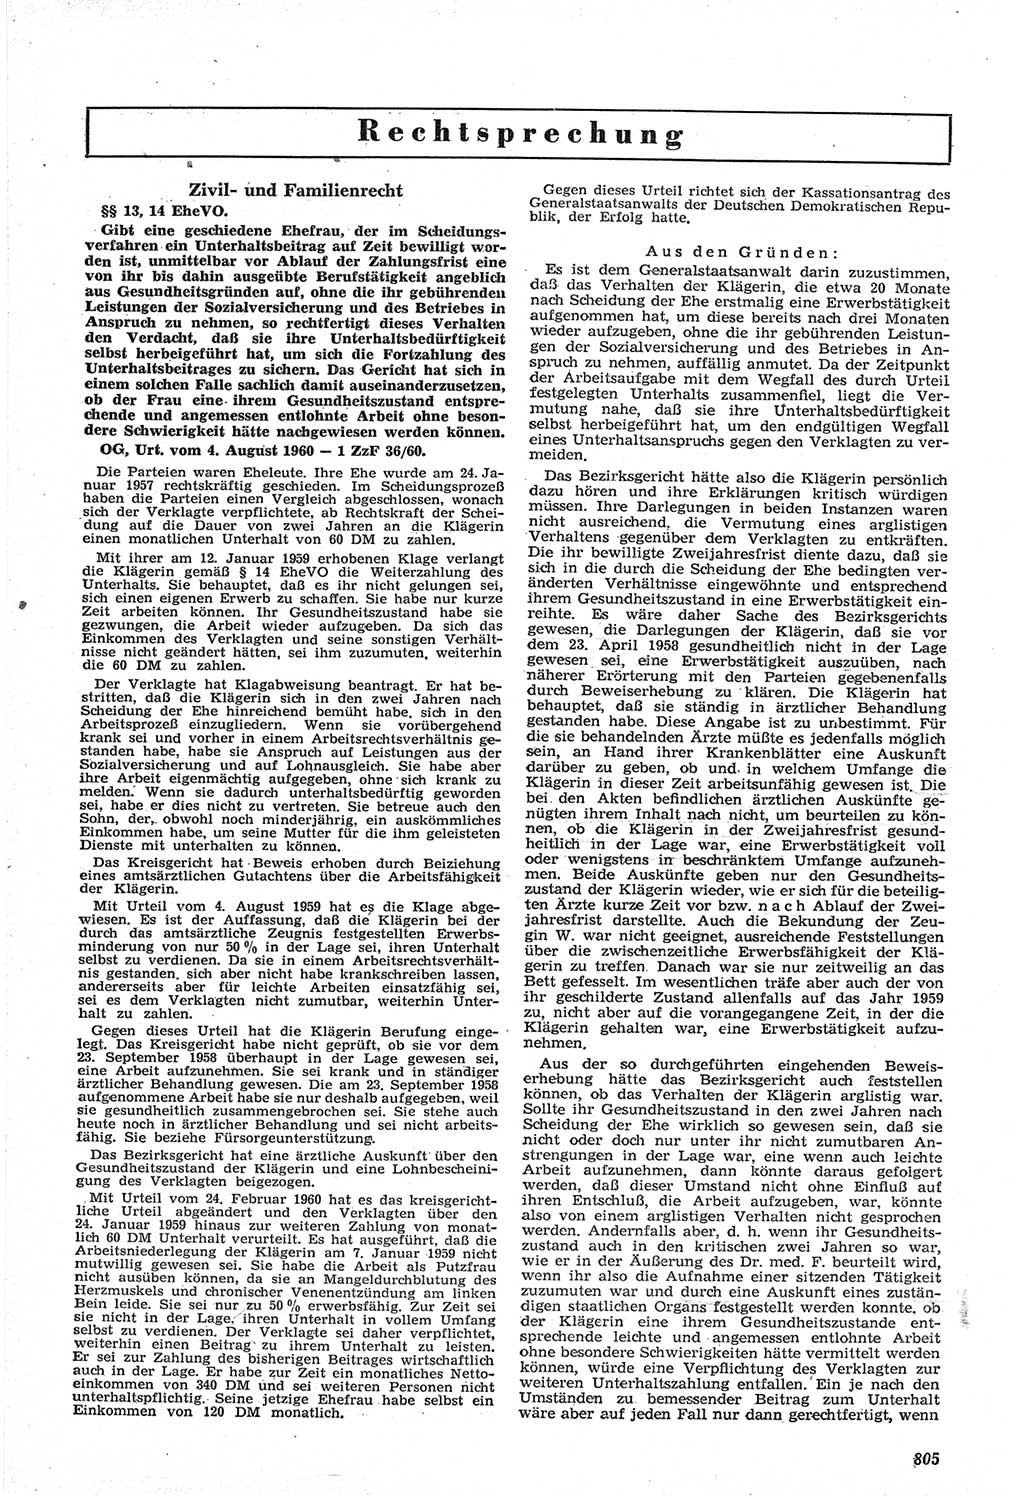 Neue Justiz (NJ), Zeitschrift für Recht und Rechtswissenschaft [Deutsche Demokratische Republik (DDR)], 14. Jahrgang 1960, Seite 805 (NJ DDR 1960, S. 805)